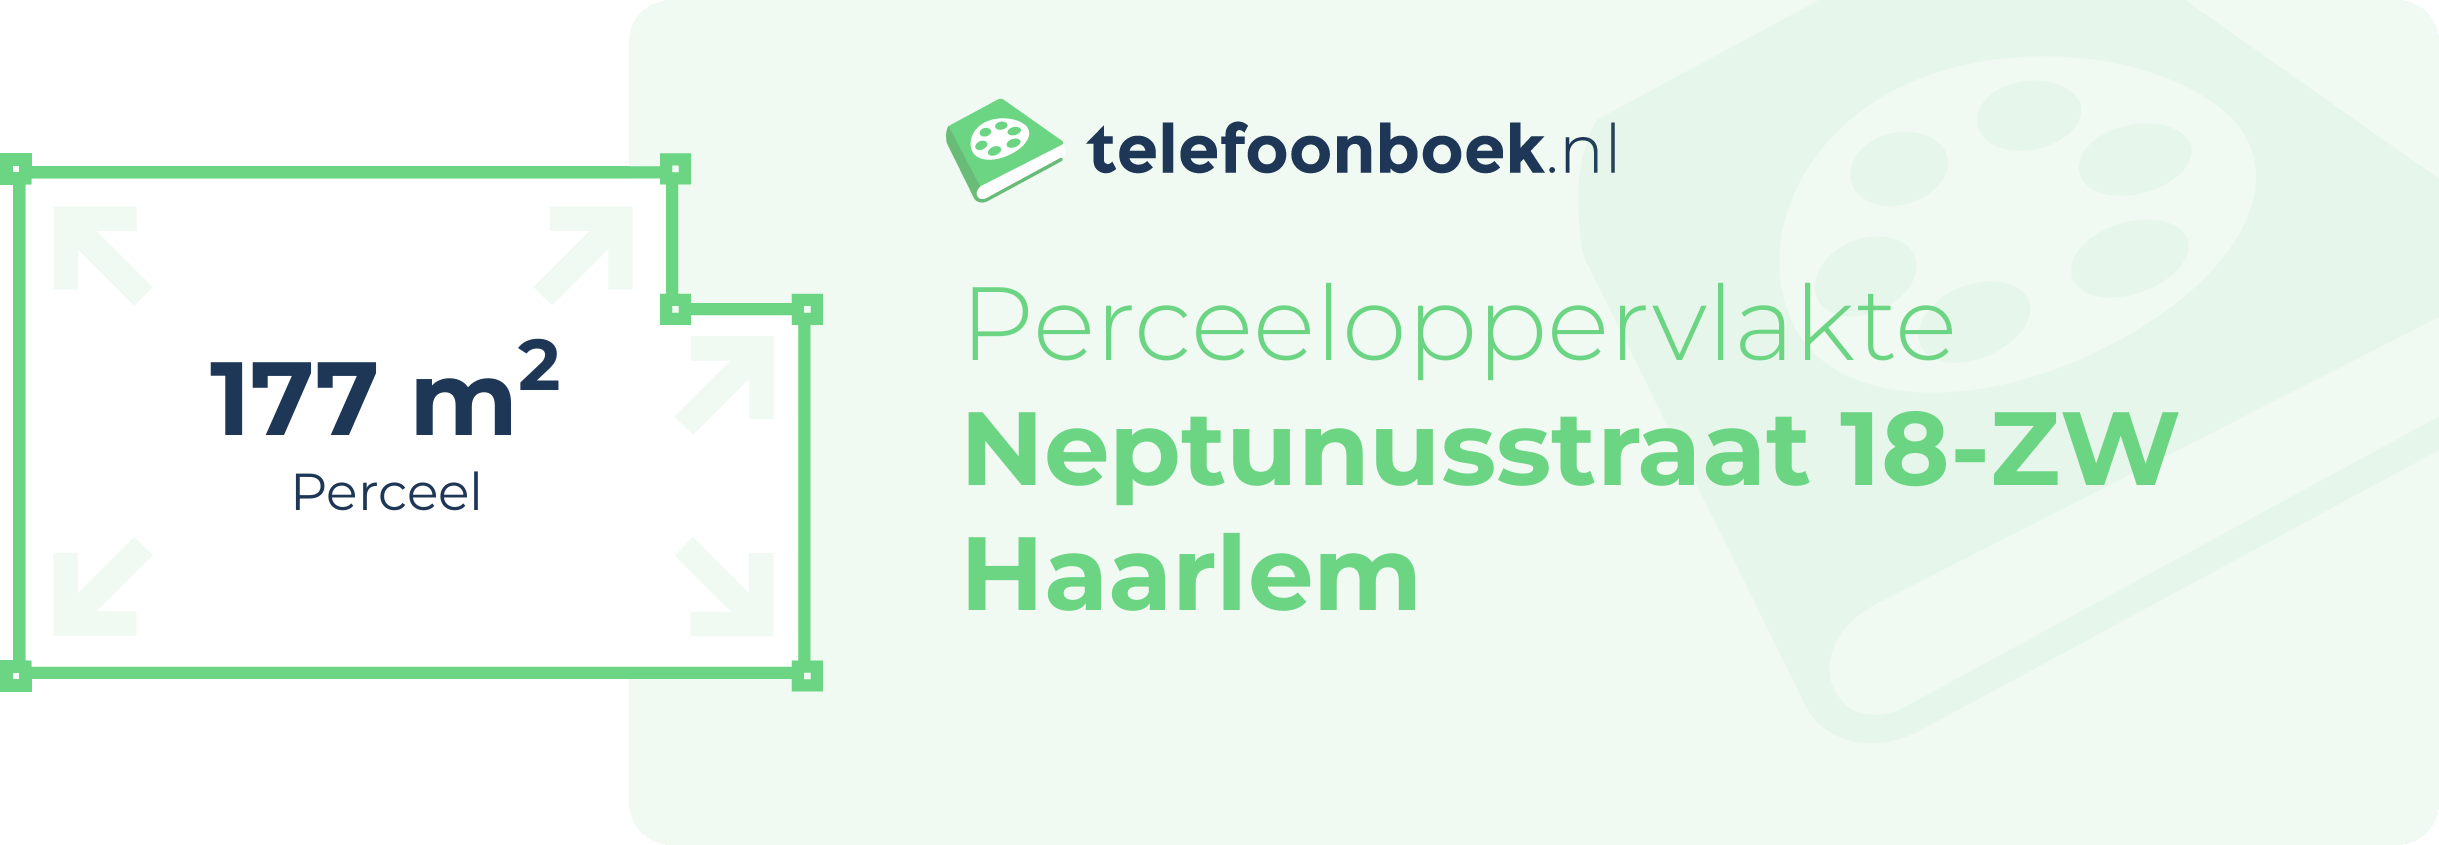 Perceeloppervlakte Neptunusstraat 18-ZW Haarlem